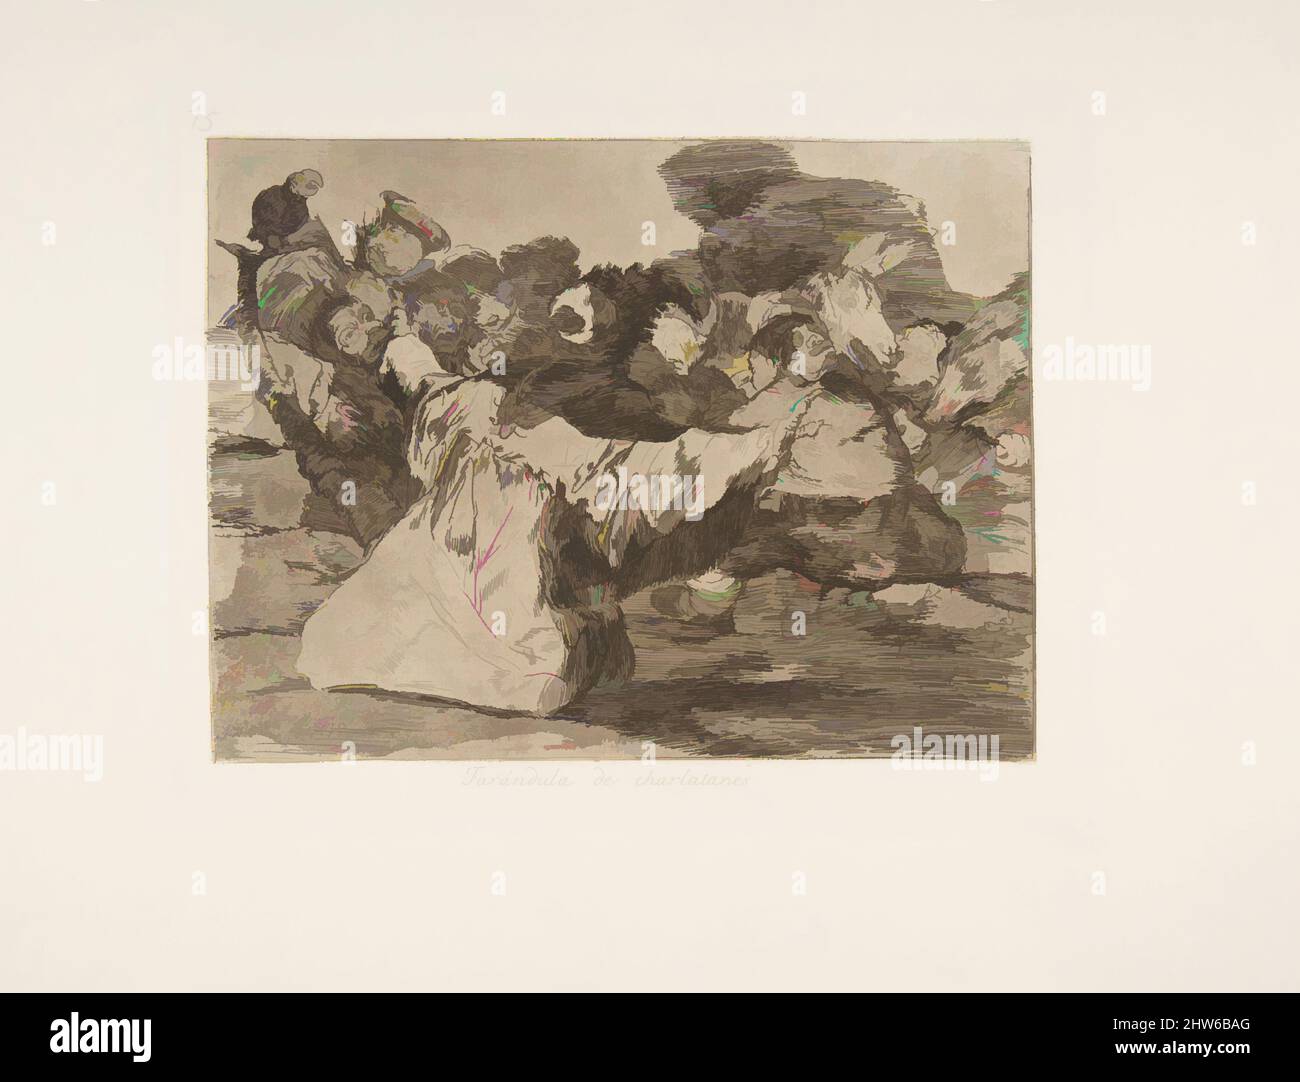 Art inspiré par la planche 75 de 'les désastres de la guerre' (Los Desastres de la Guerra): 'Charlatan's Show' (Farándula de charlatanes.), après 1814–15 (publié en 1863), Etching, aquatint ou lavis, Drypoint et buriin, plaque: 6 3/4 × 8 11/16 in. (17,2 × 22 cm), Prints, Goya (Francisco de Goya, oeuvres classiques modernisées par Artotop avec une touche de modernité. Formes, couleur et valeur, impact visuel accrocheur sur l'art émotions par la liberté d'œuvres d'art d'une manière contemporaine. Un message intemporel qui cherche une nouvelle direction créative. Artistes qui se tournent vers le support numérique et créent le NFT Artotop Banque D'Images